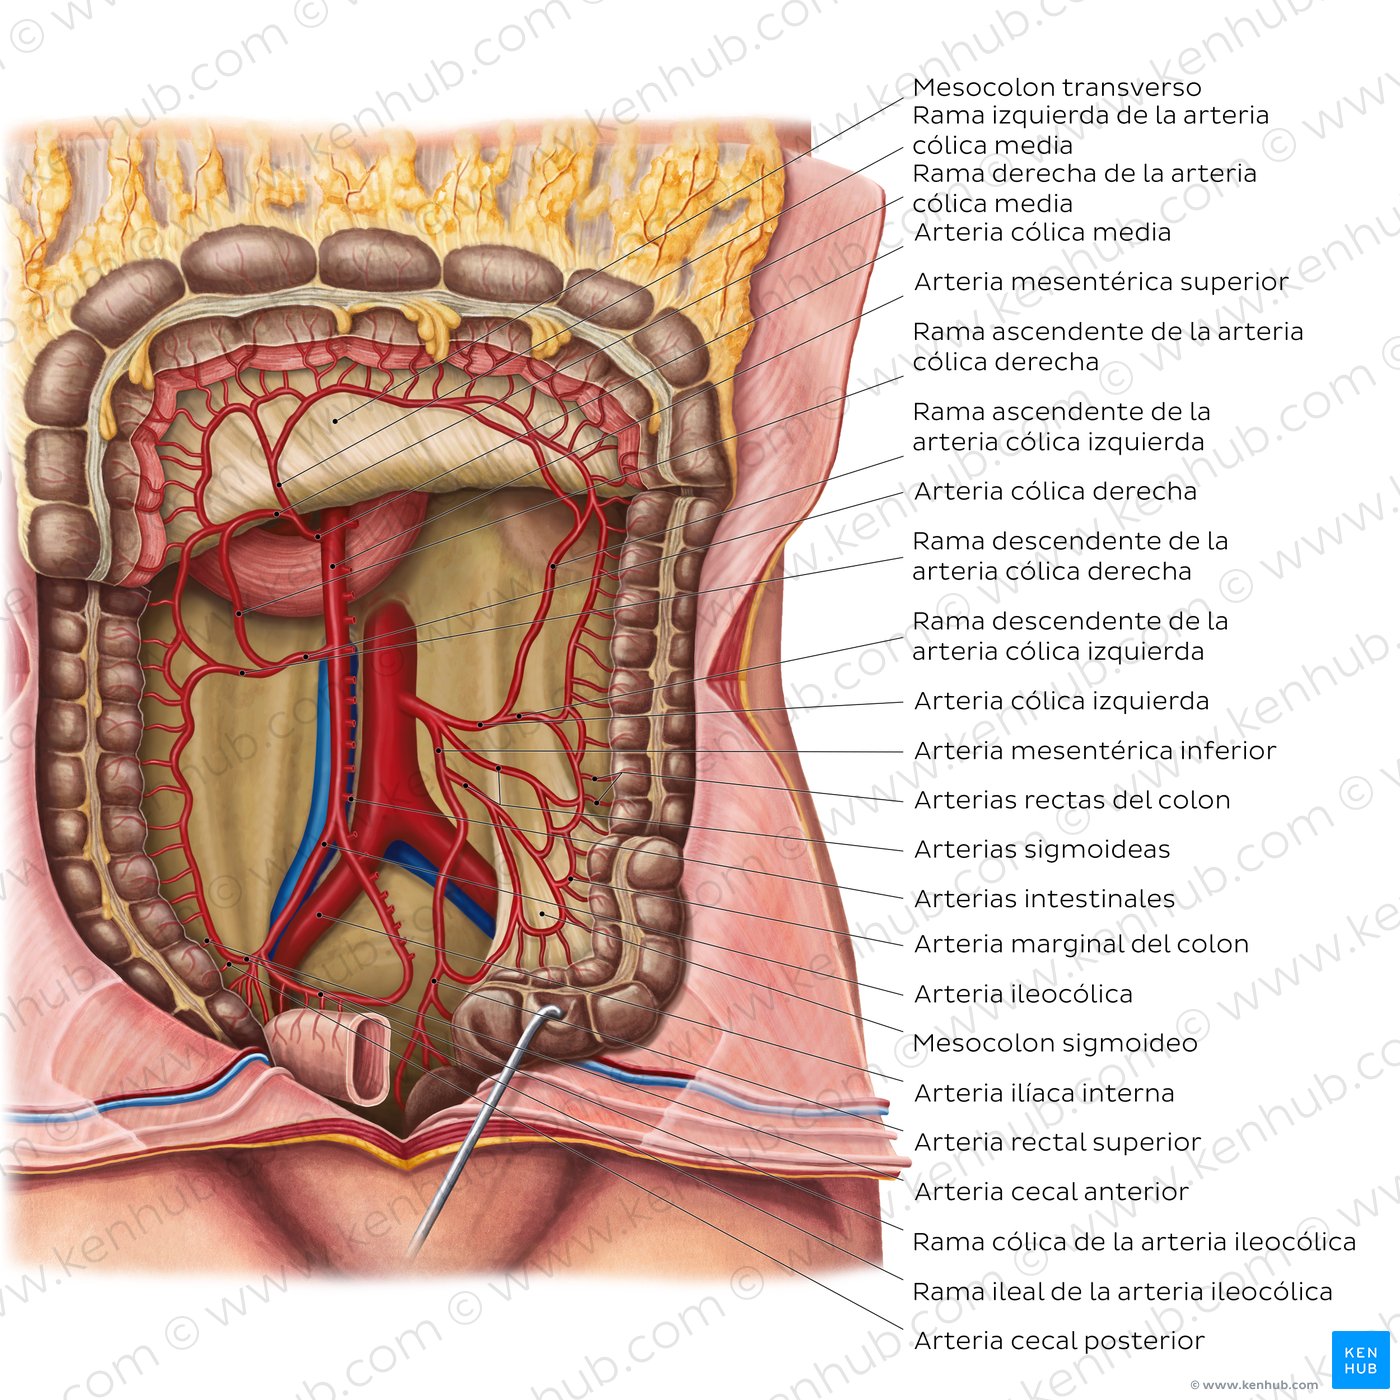 Arterias del intestino grueso